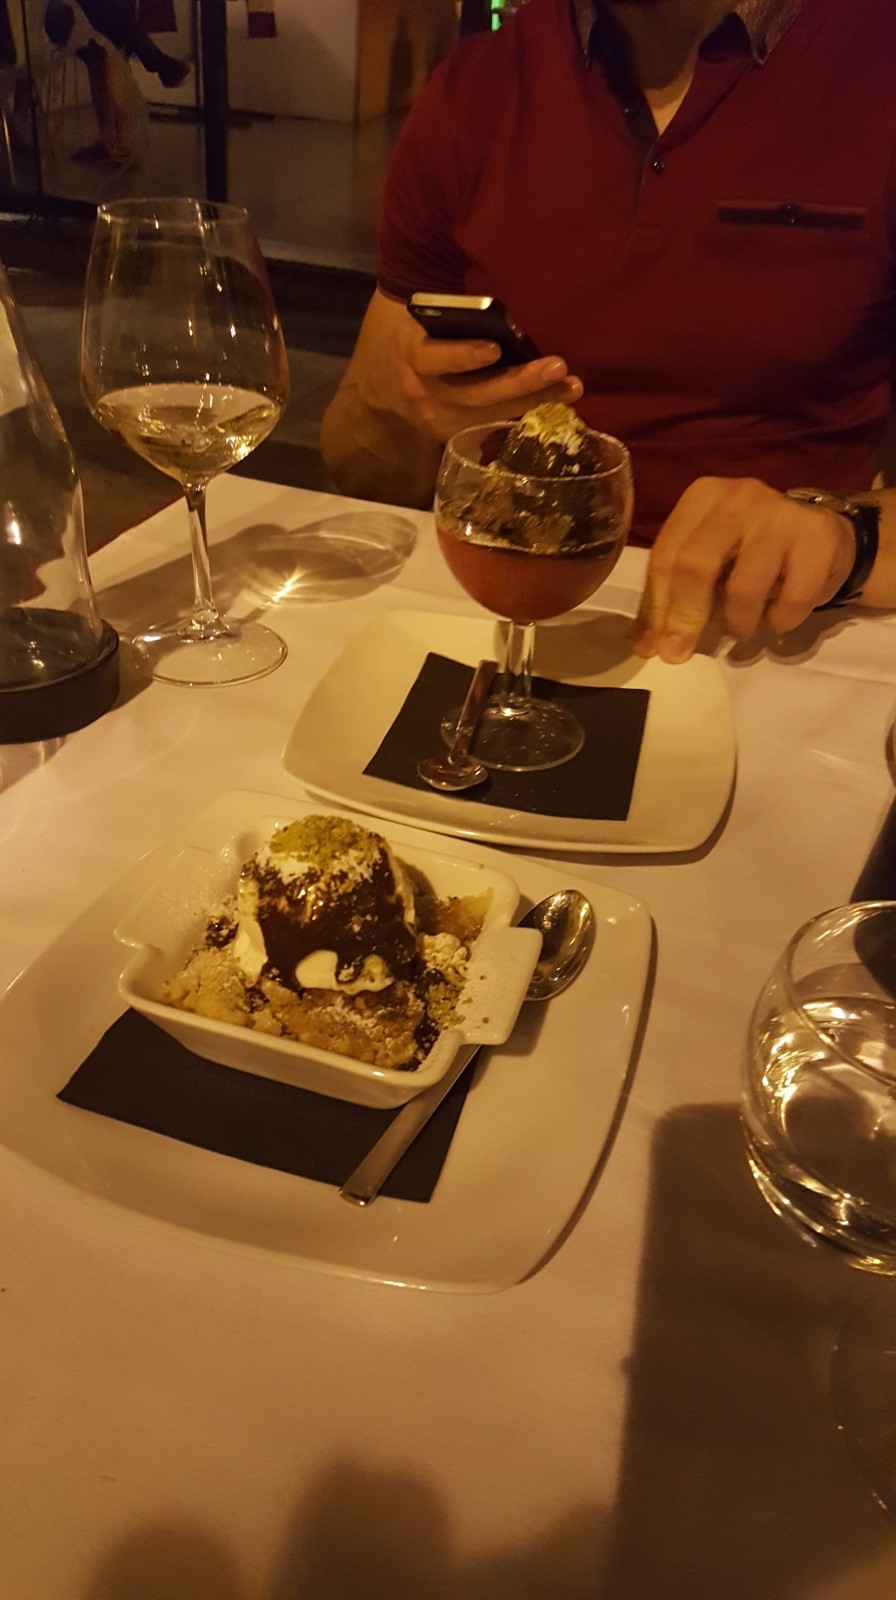 Desserts from Ristorante Ferro